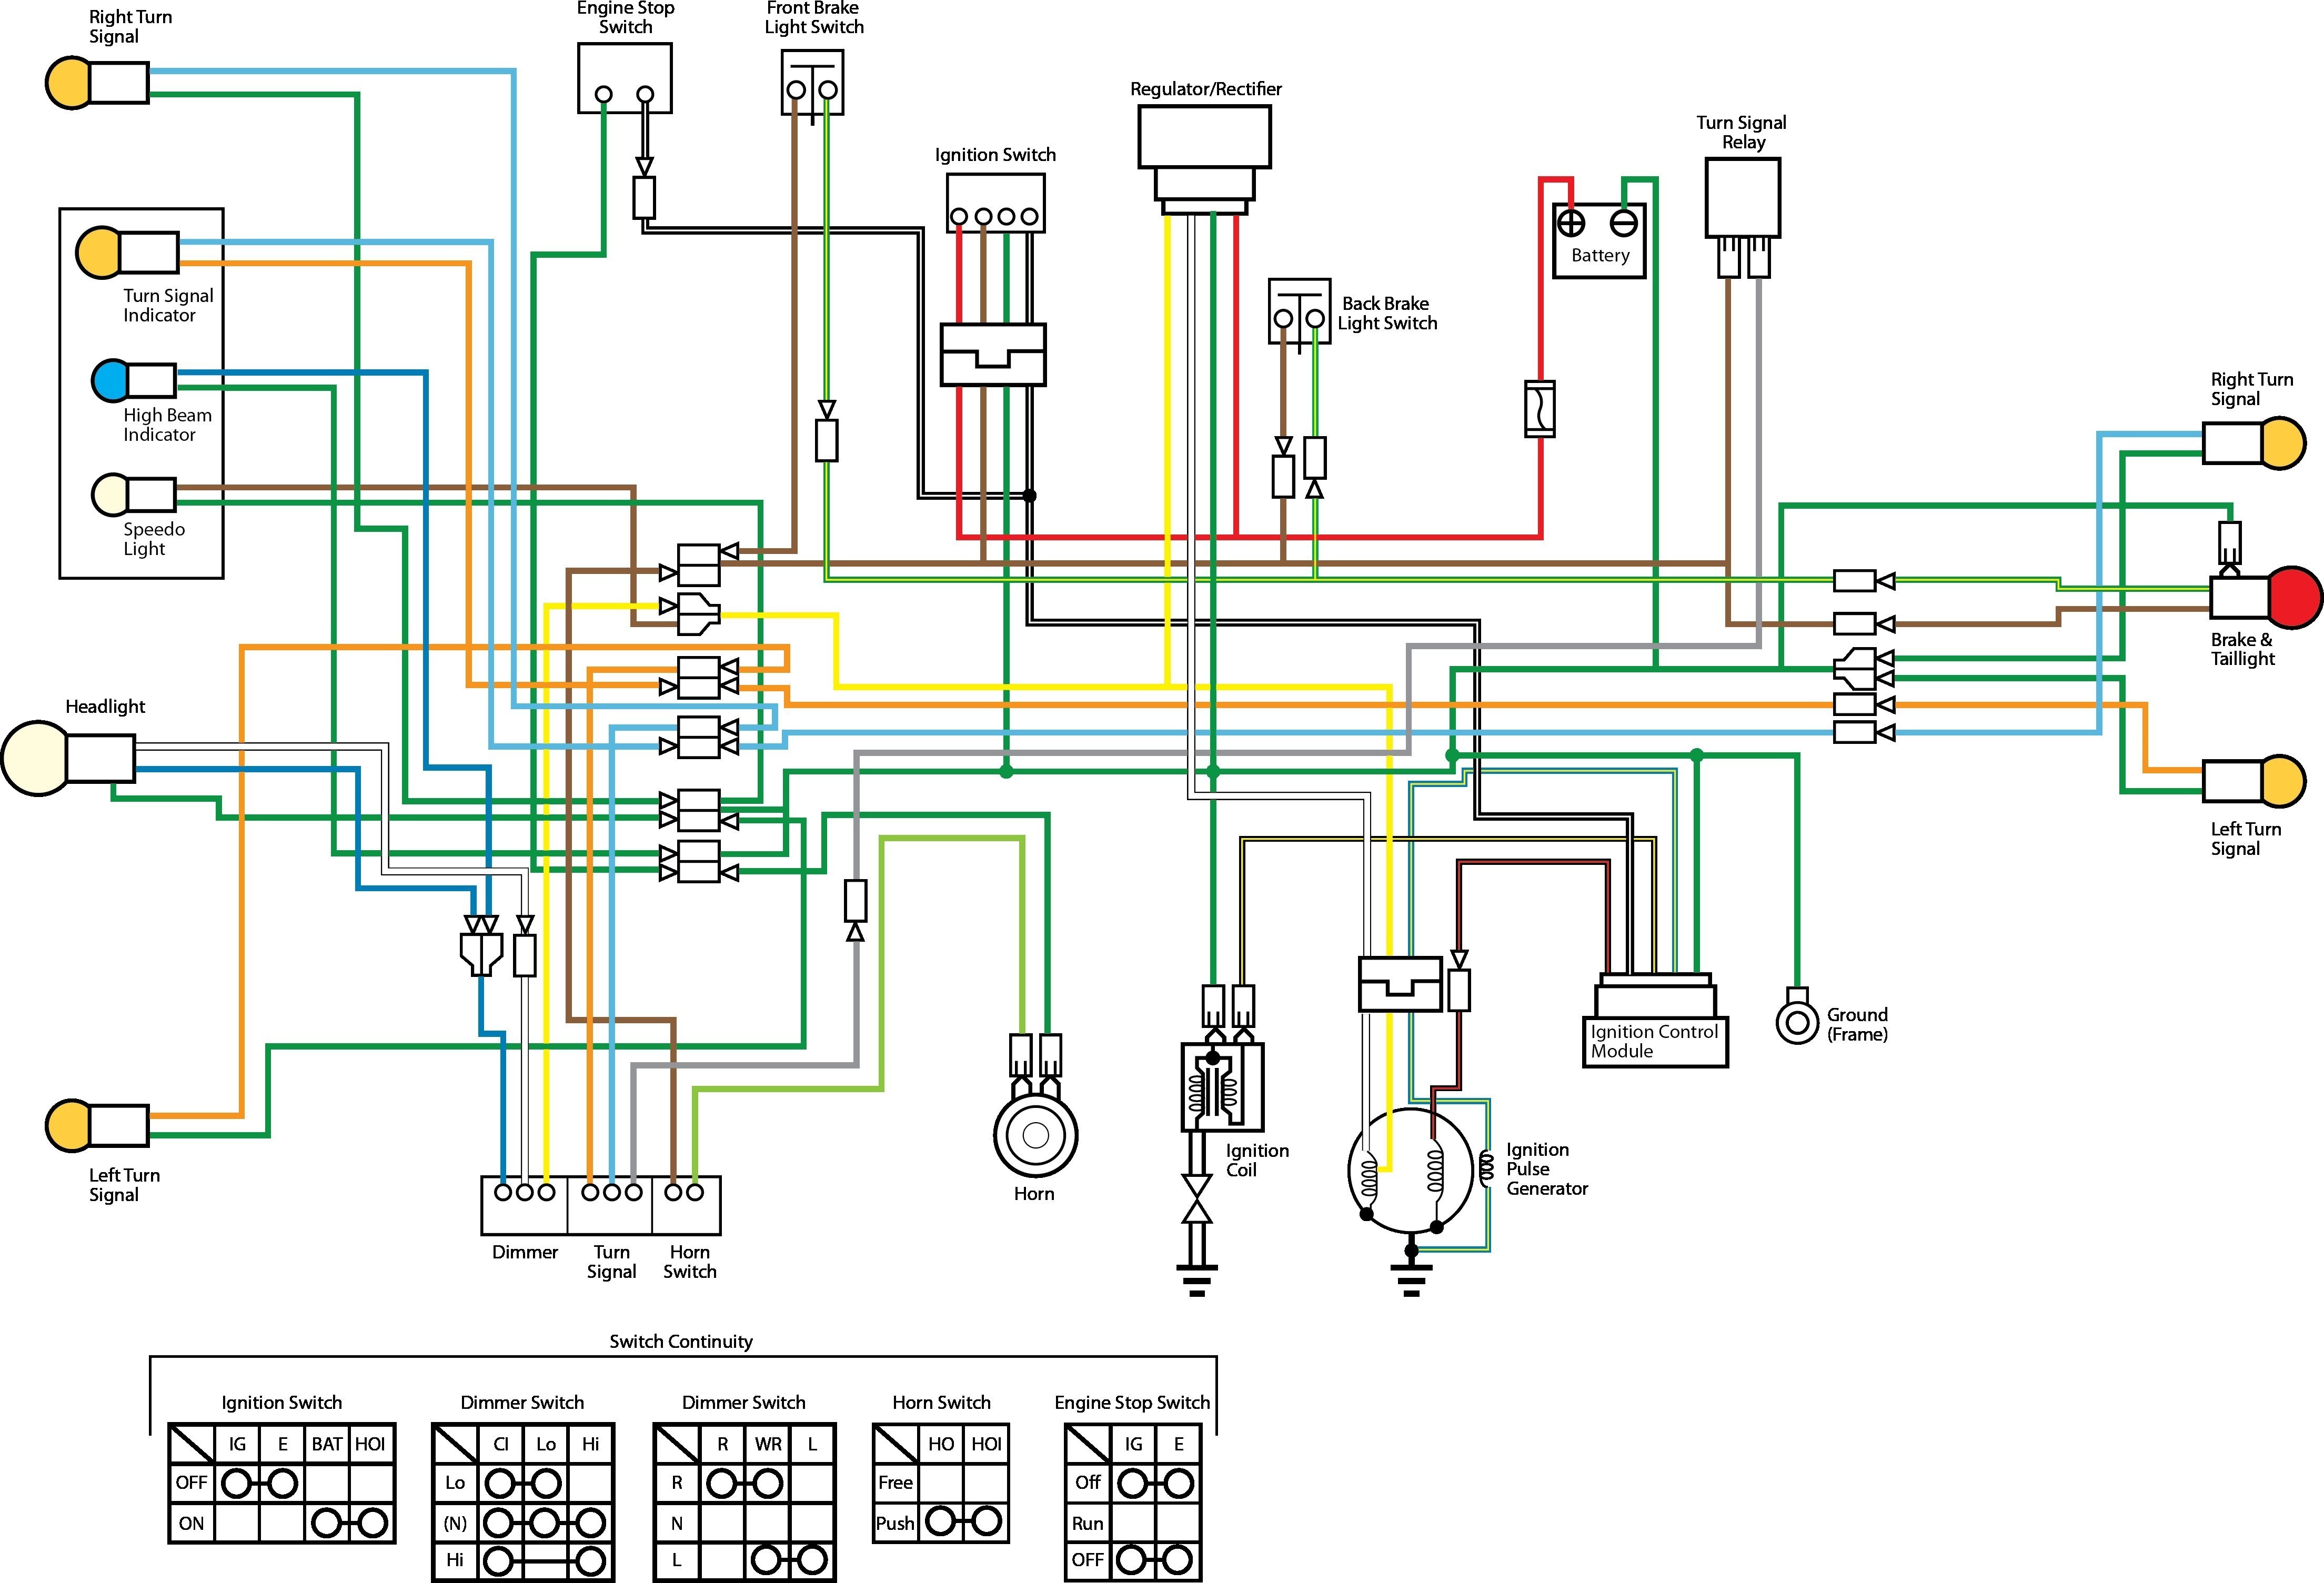 yamaha c90 wiring diagram wiring diagram mega honda c90 wiring diagram wiring diagram toolbox yamaha c90